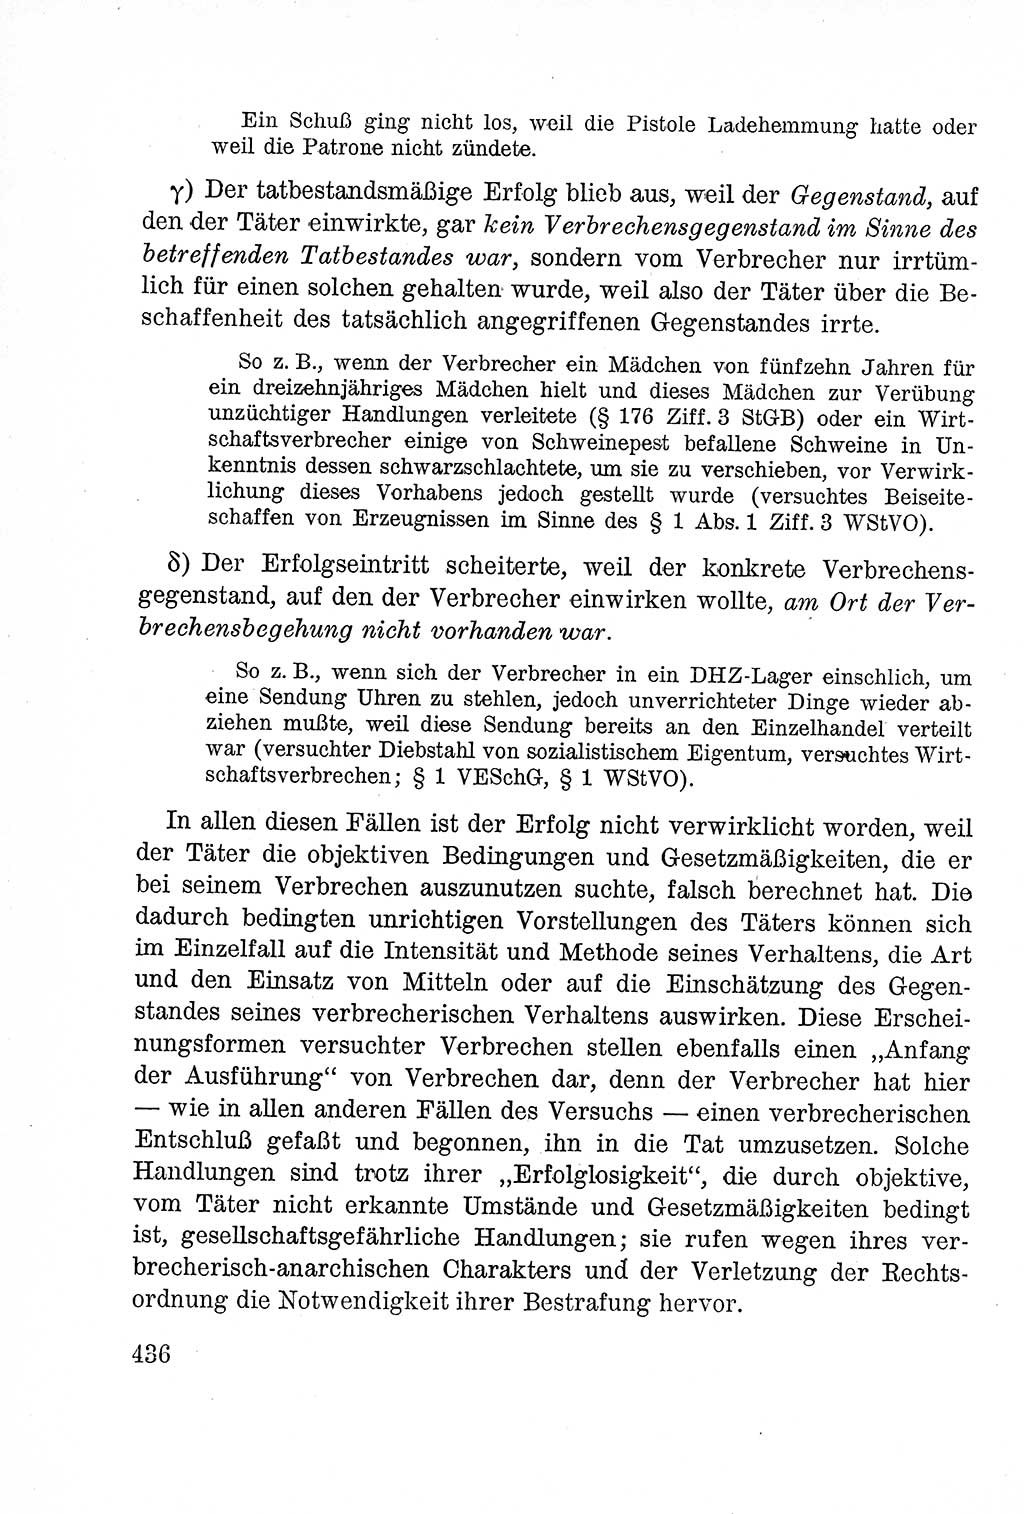 Lehrbuch des Strafrechts der Deutschen Demokratischen Republik (DDR), Allgemeiner Teil 1957, Seite 436 (Lb. Strafr. DDR AT 1957, S. 436)